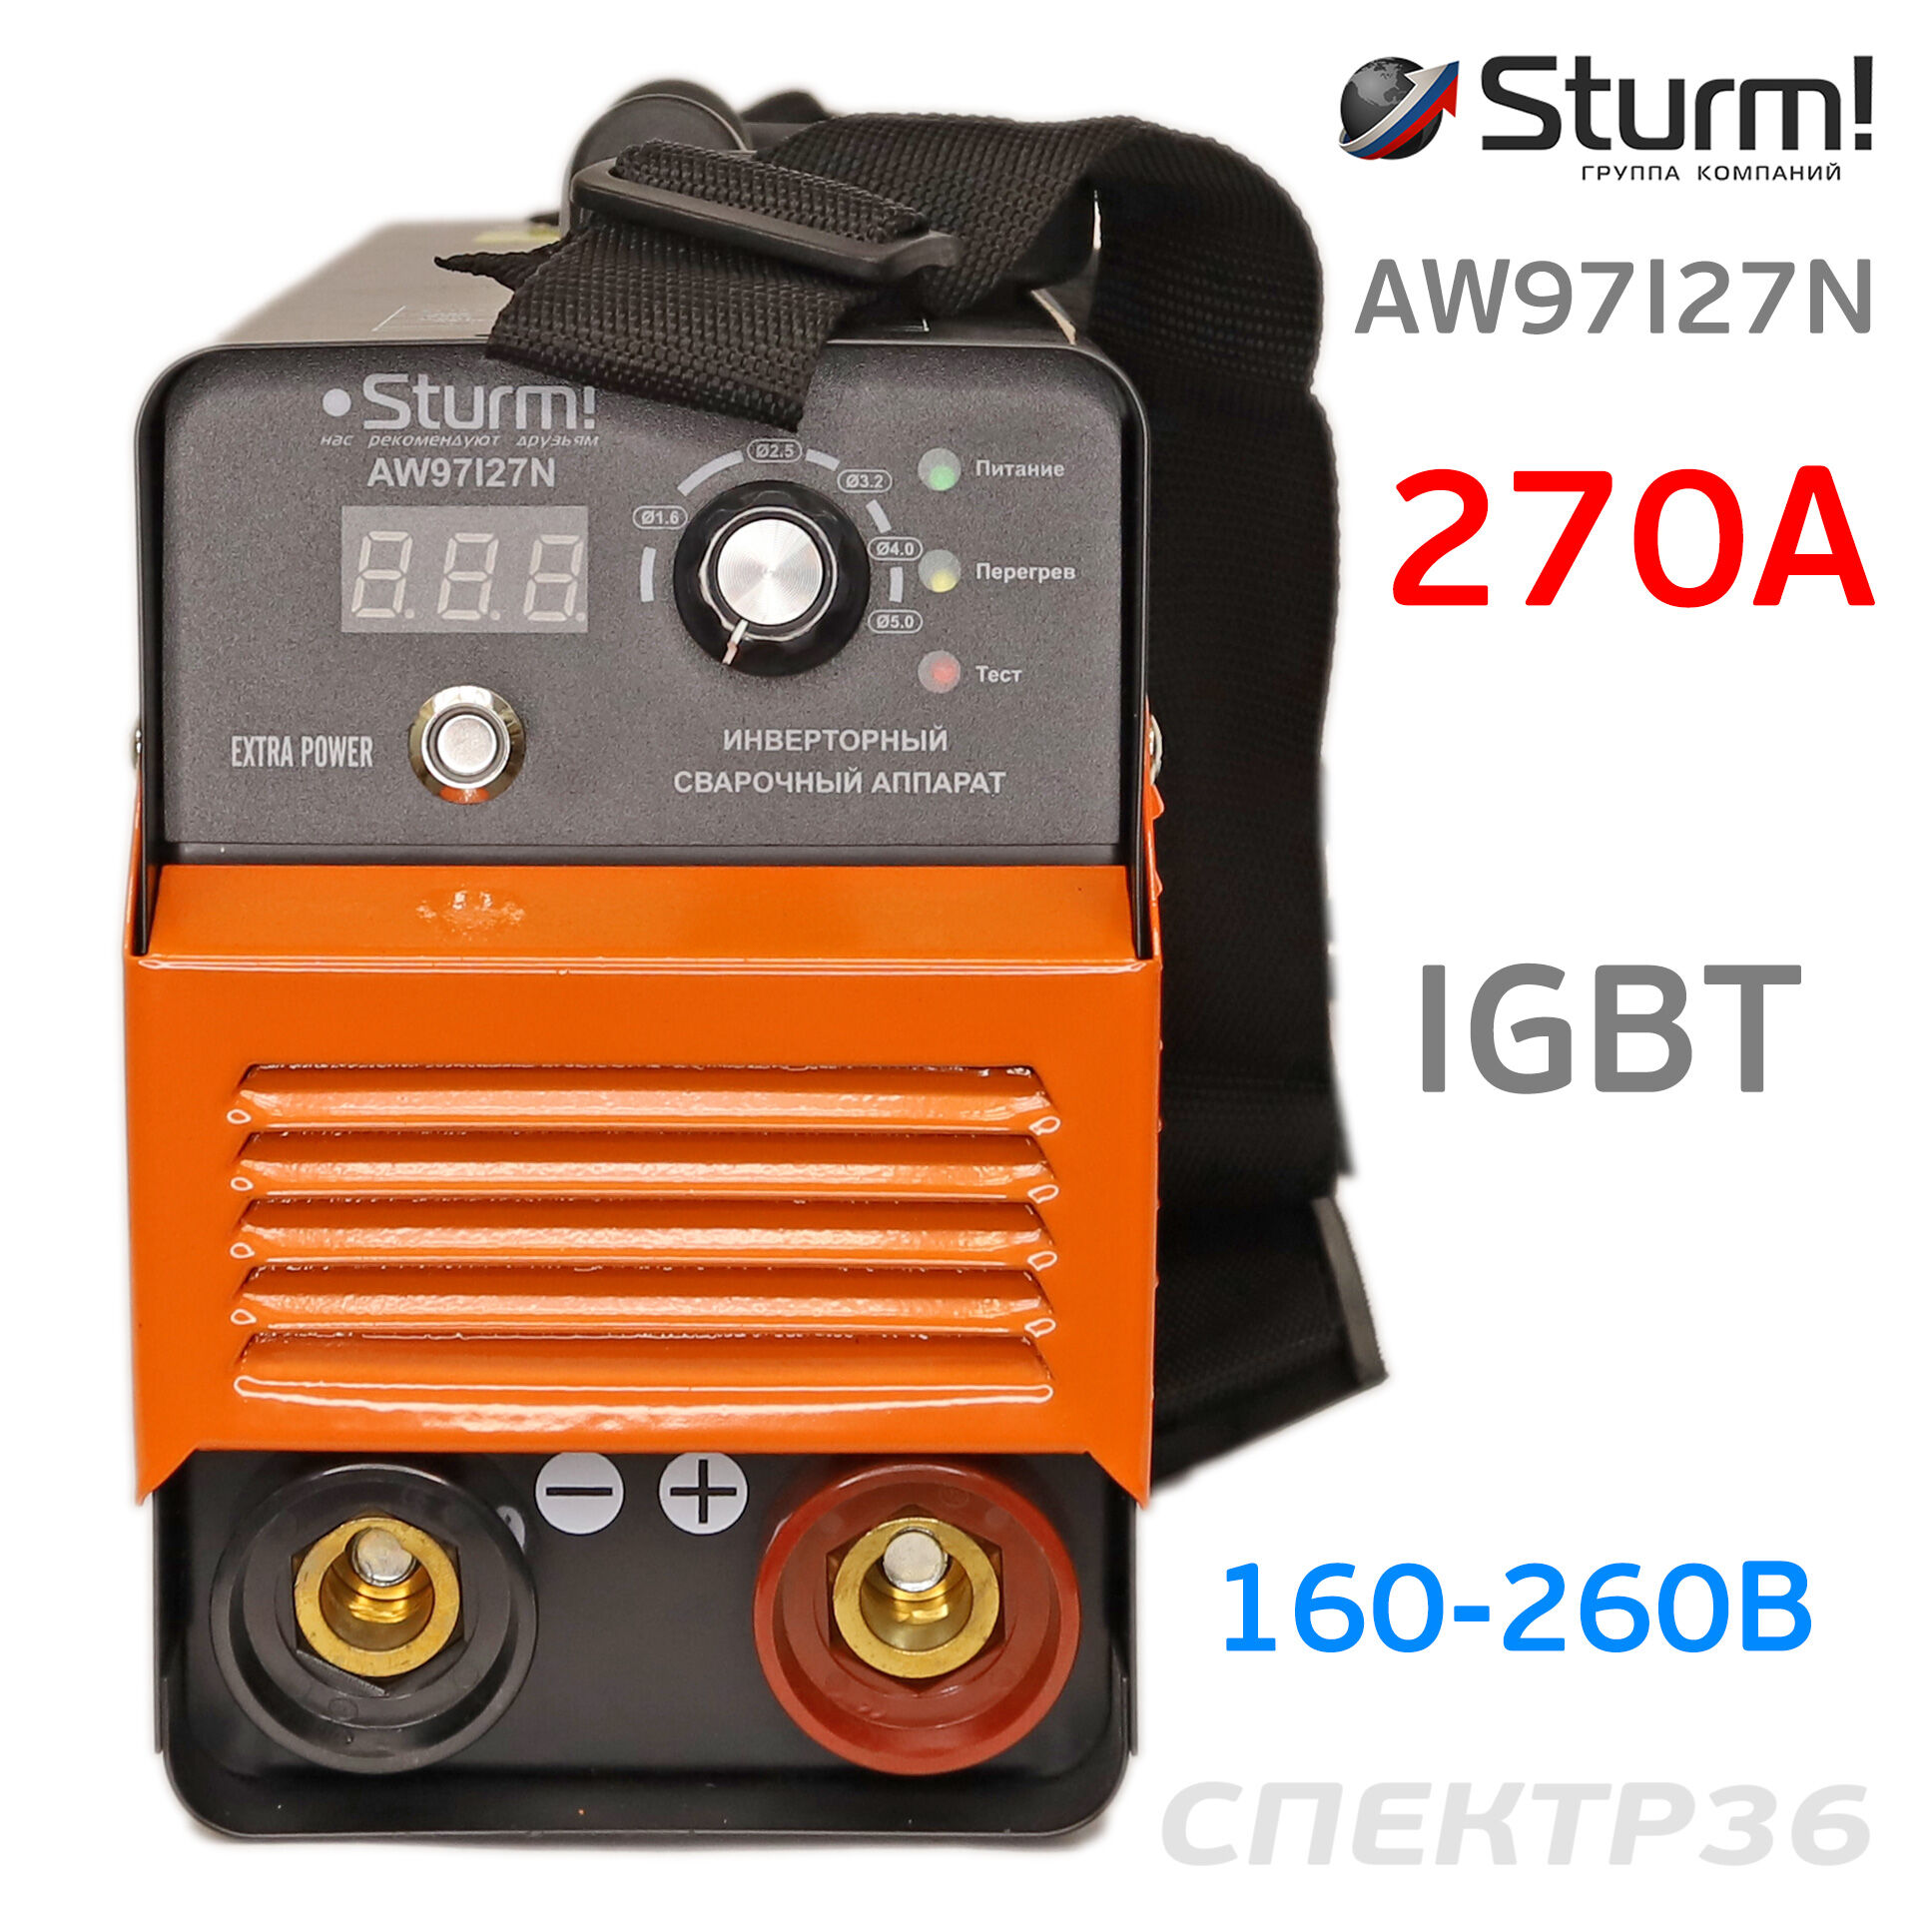 Инвертор Sturm AW97I27N (160-260В, 270 А) IGBT сварочный 2